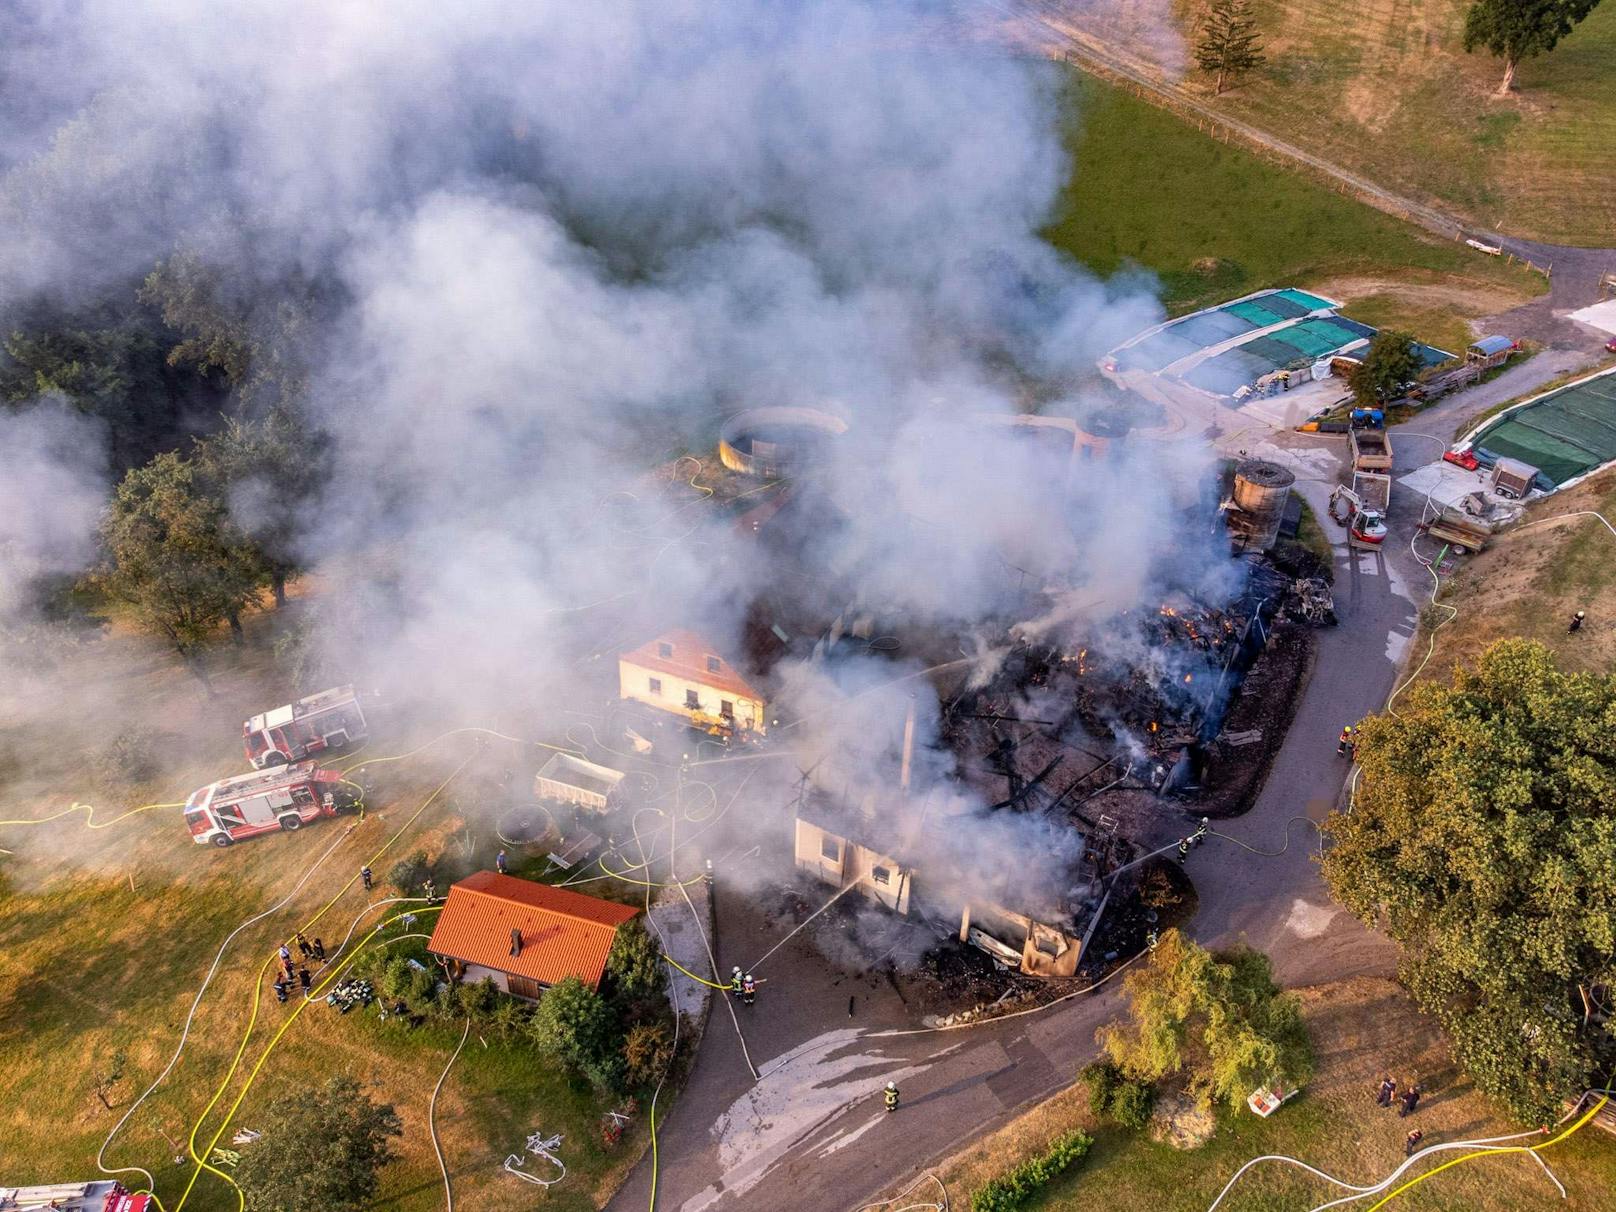 Elektrischer Defekt löste Brand am Bauernhof aus